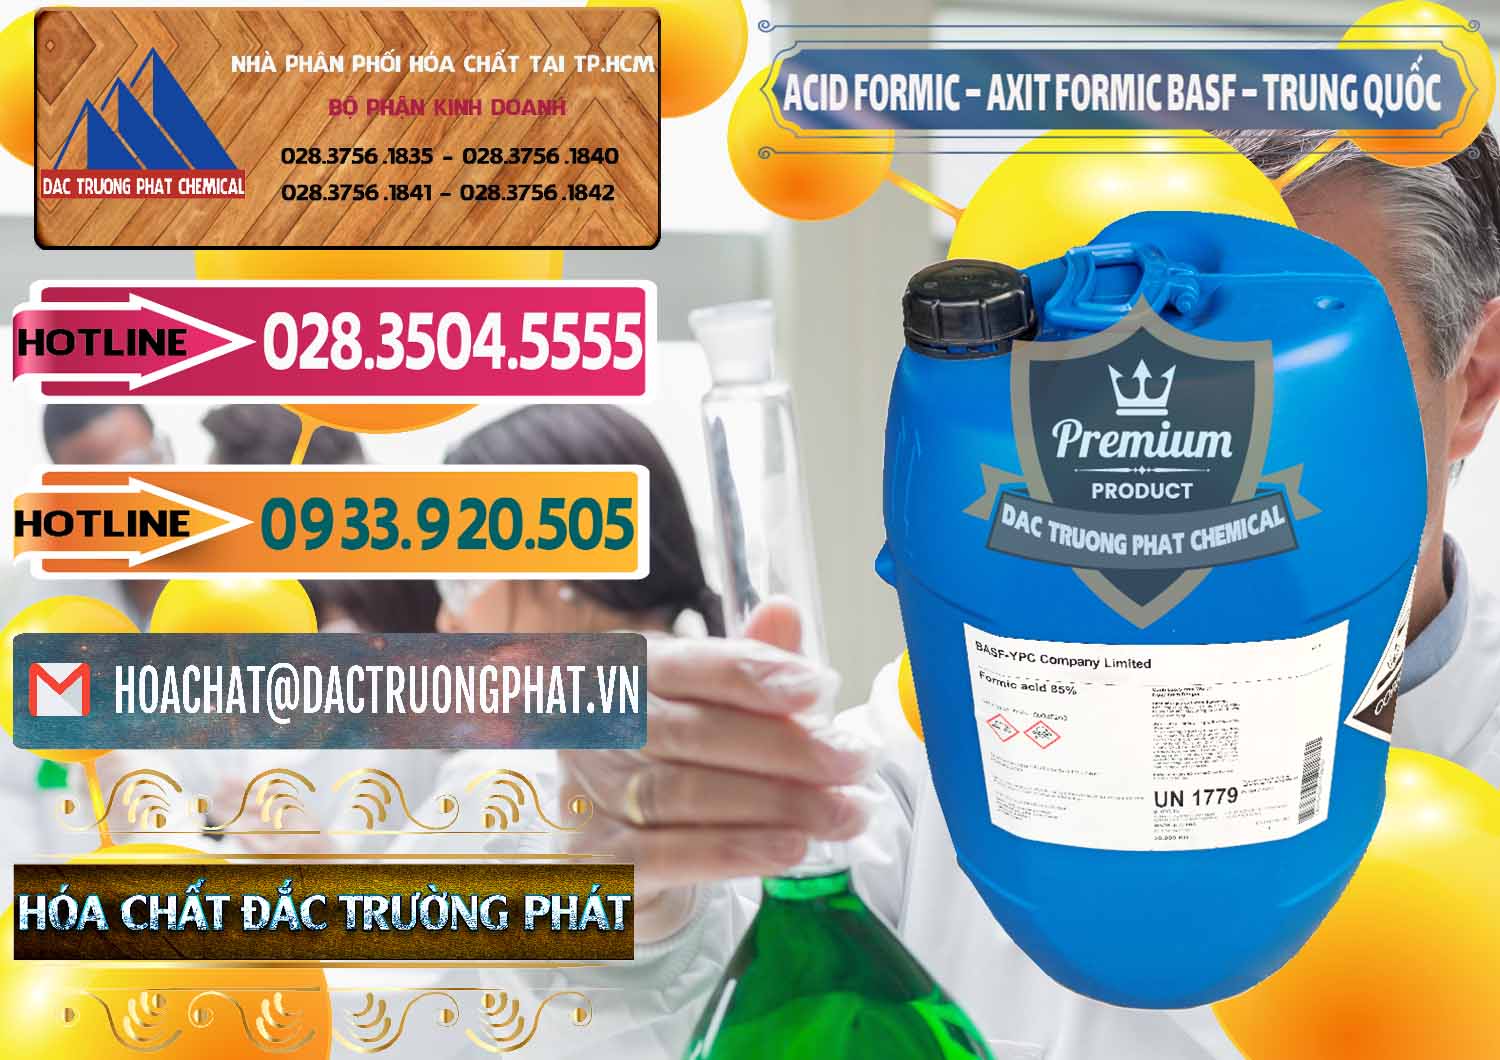 Chuyên bán & cung ứng Acid Formic - Axit Formic BASF Trung Quốc China - 0025 - Cty phân phối và cung ứng hóa chất tại TP.HCM - dactruongphat.vn